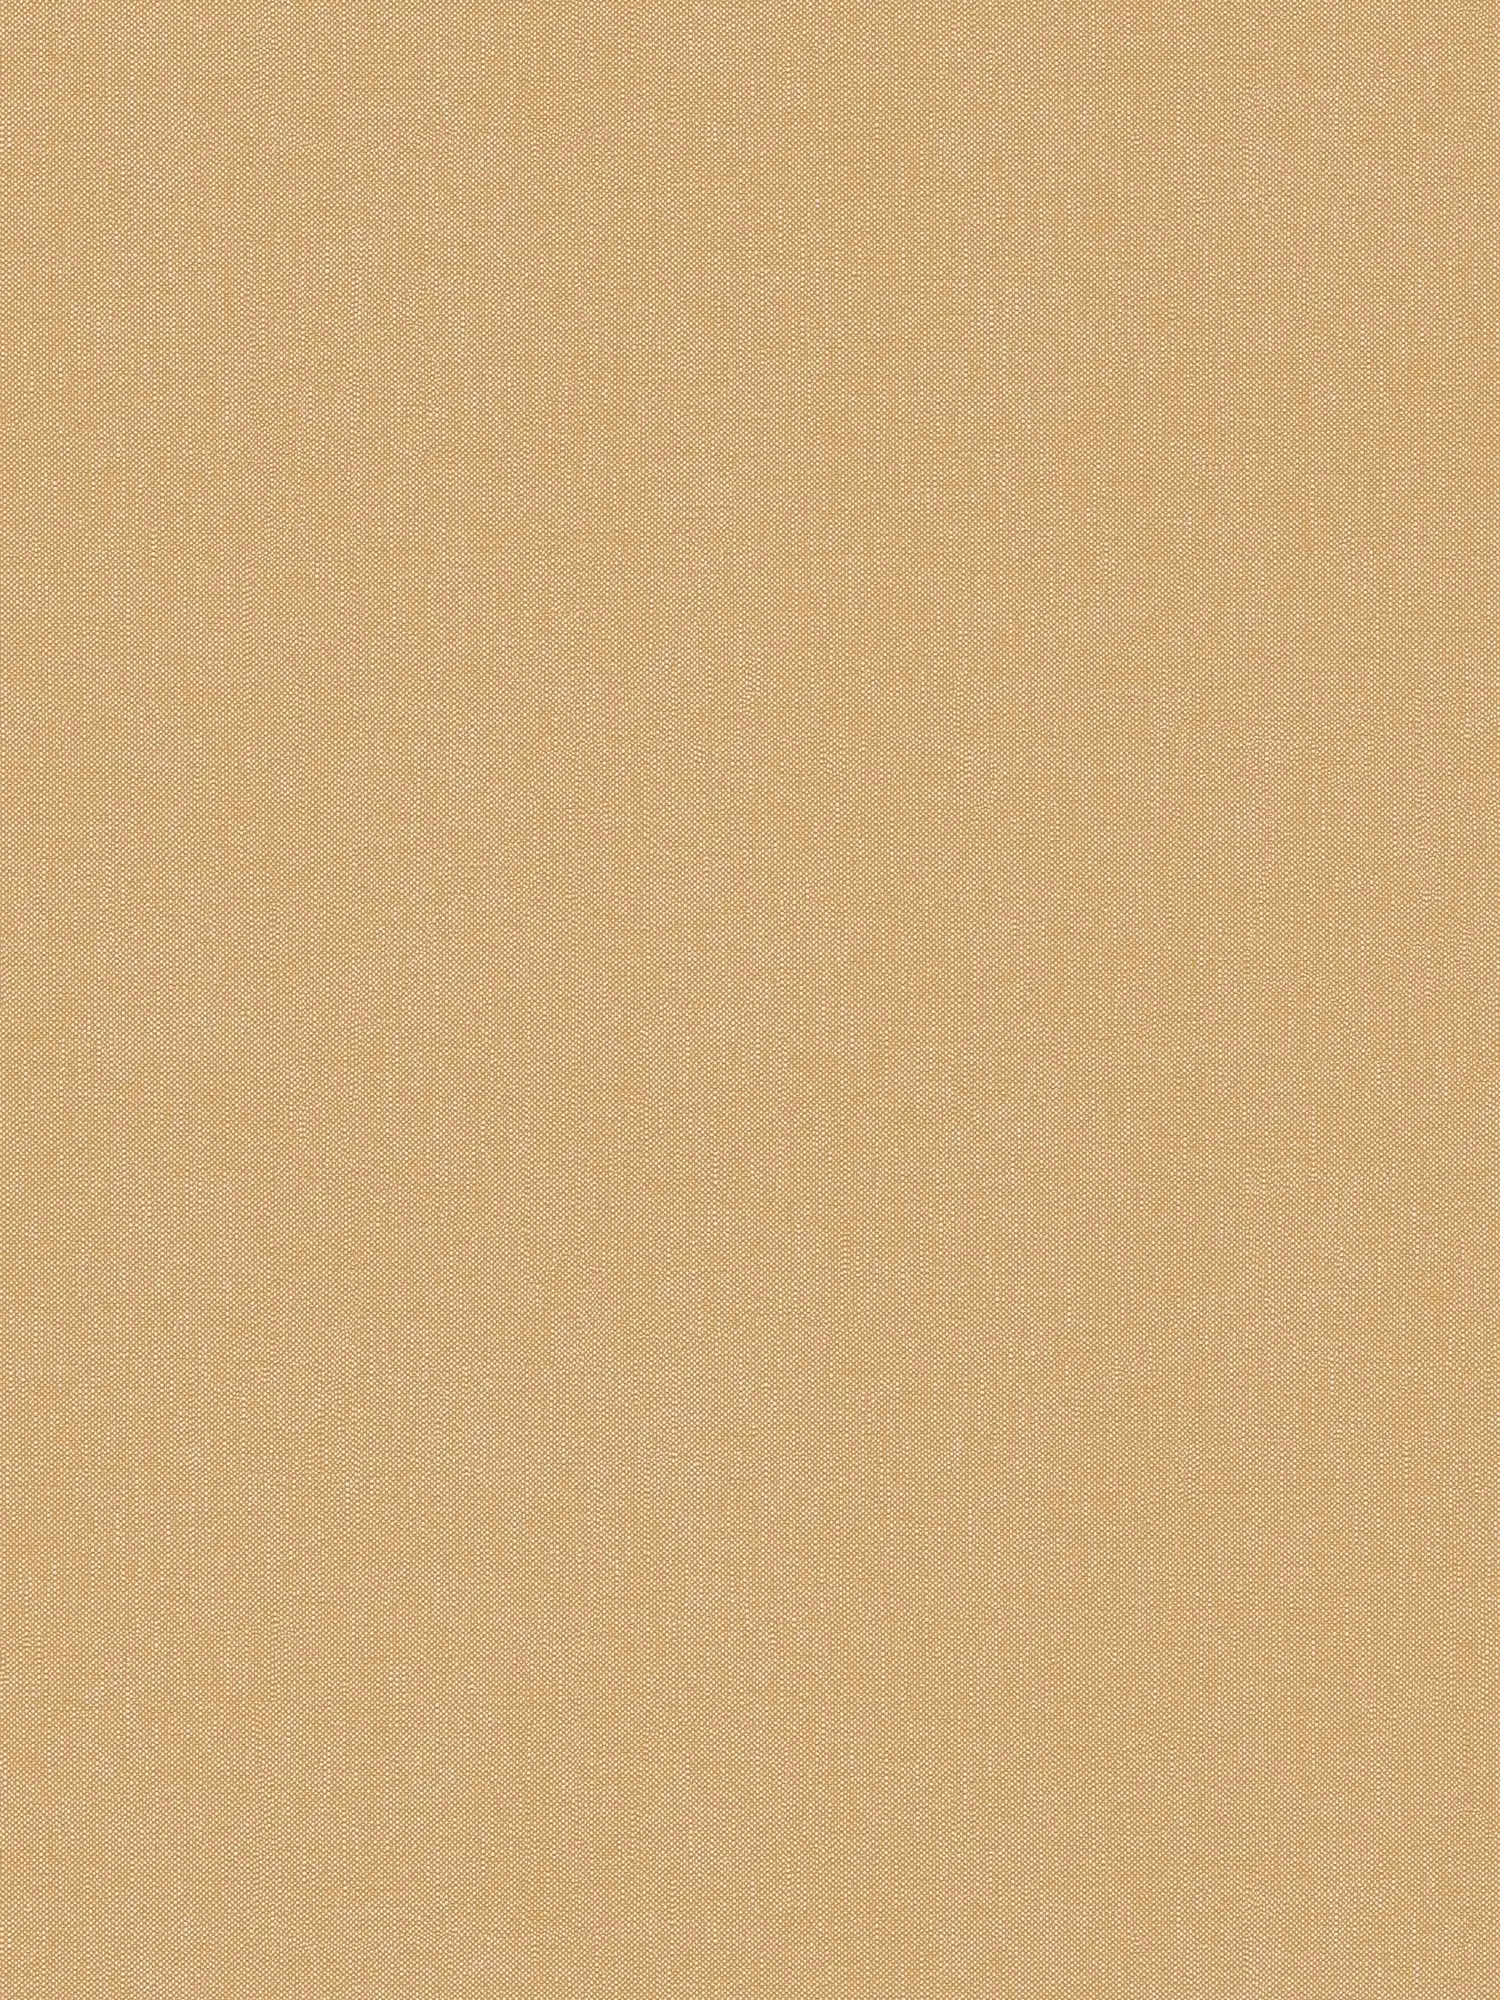         Papier peint uni à structure fine - marron, jaune
    